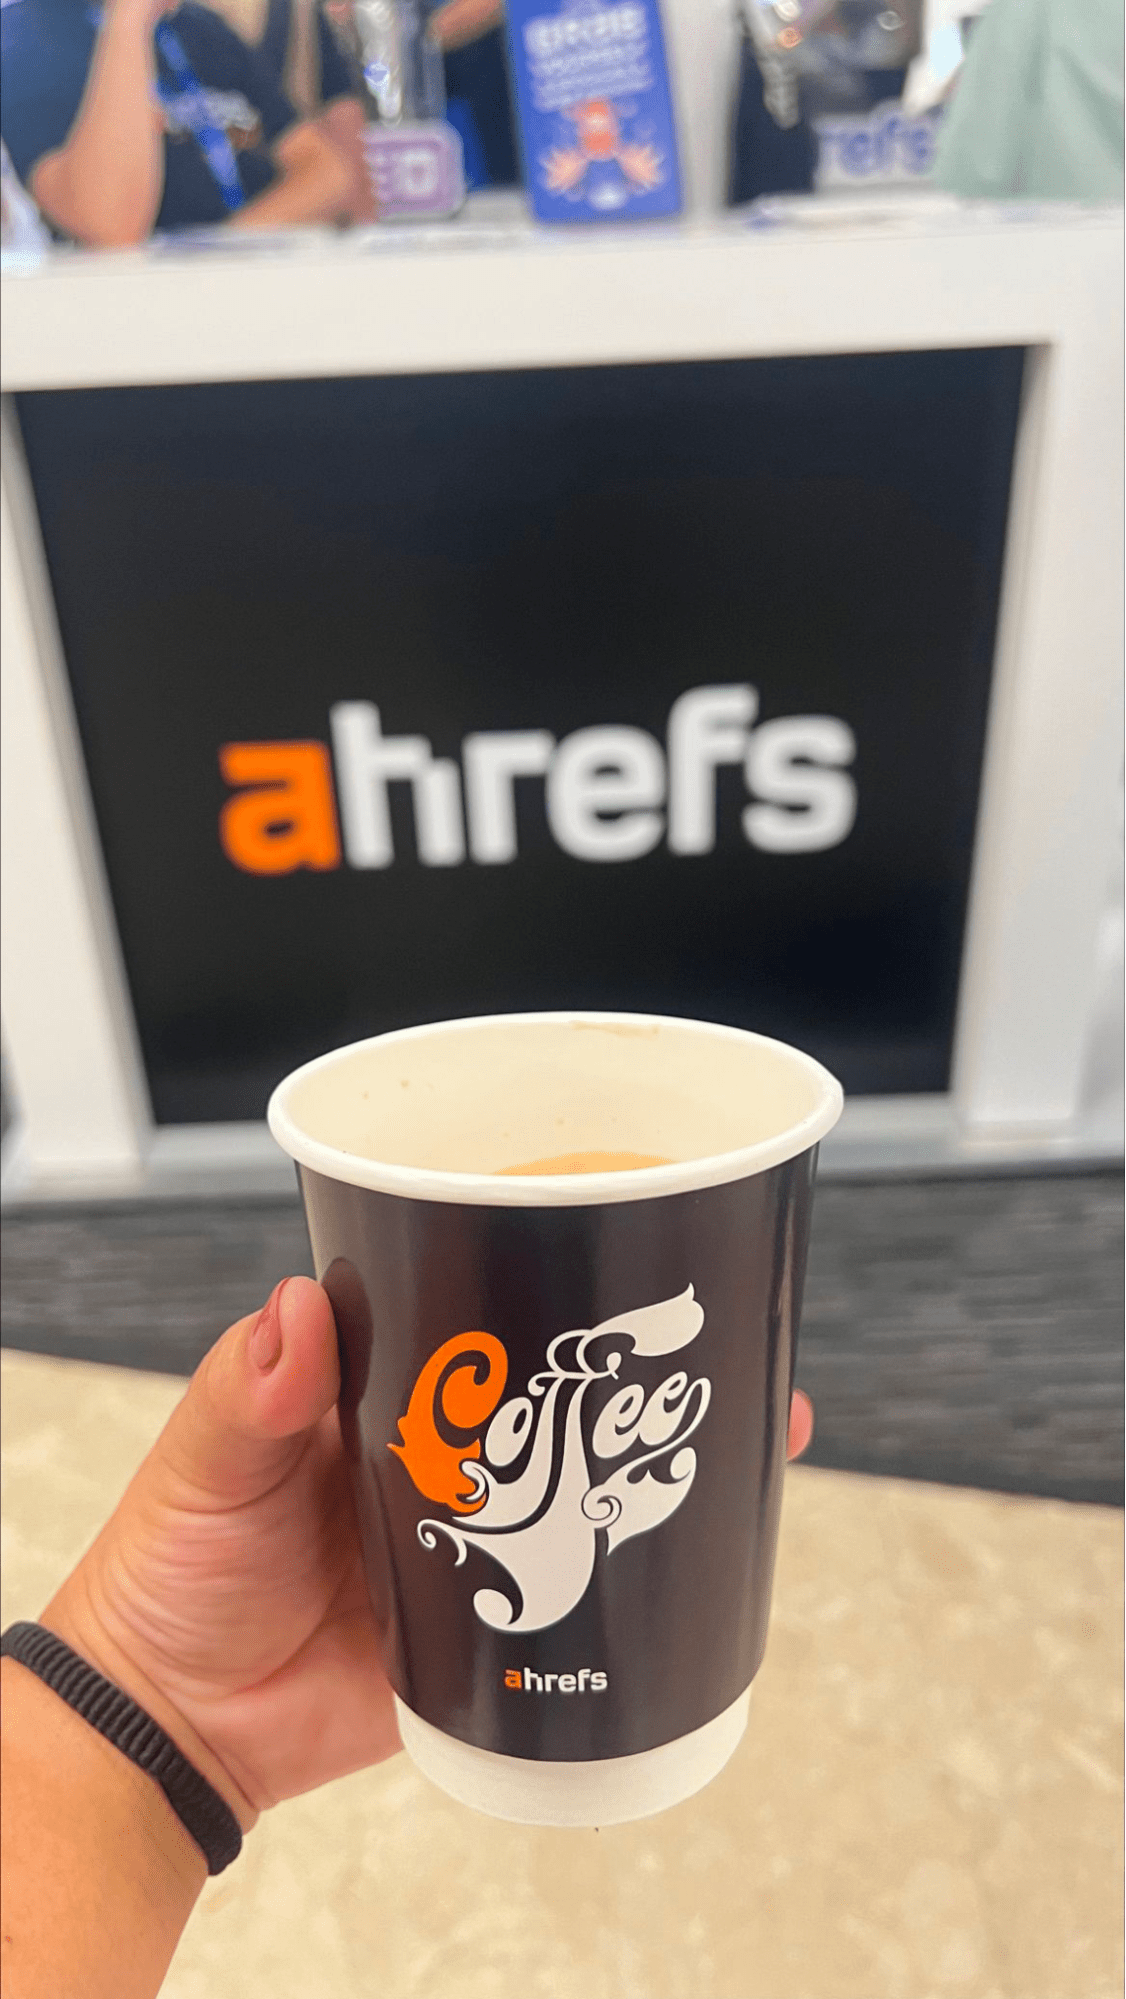 La tasse à café d'Ahrefs